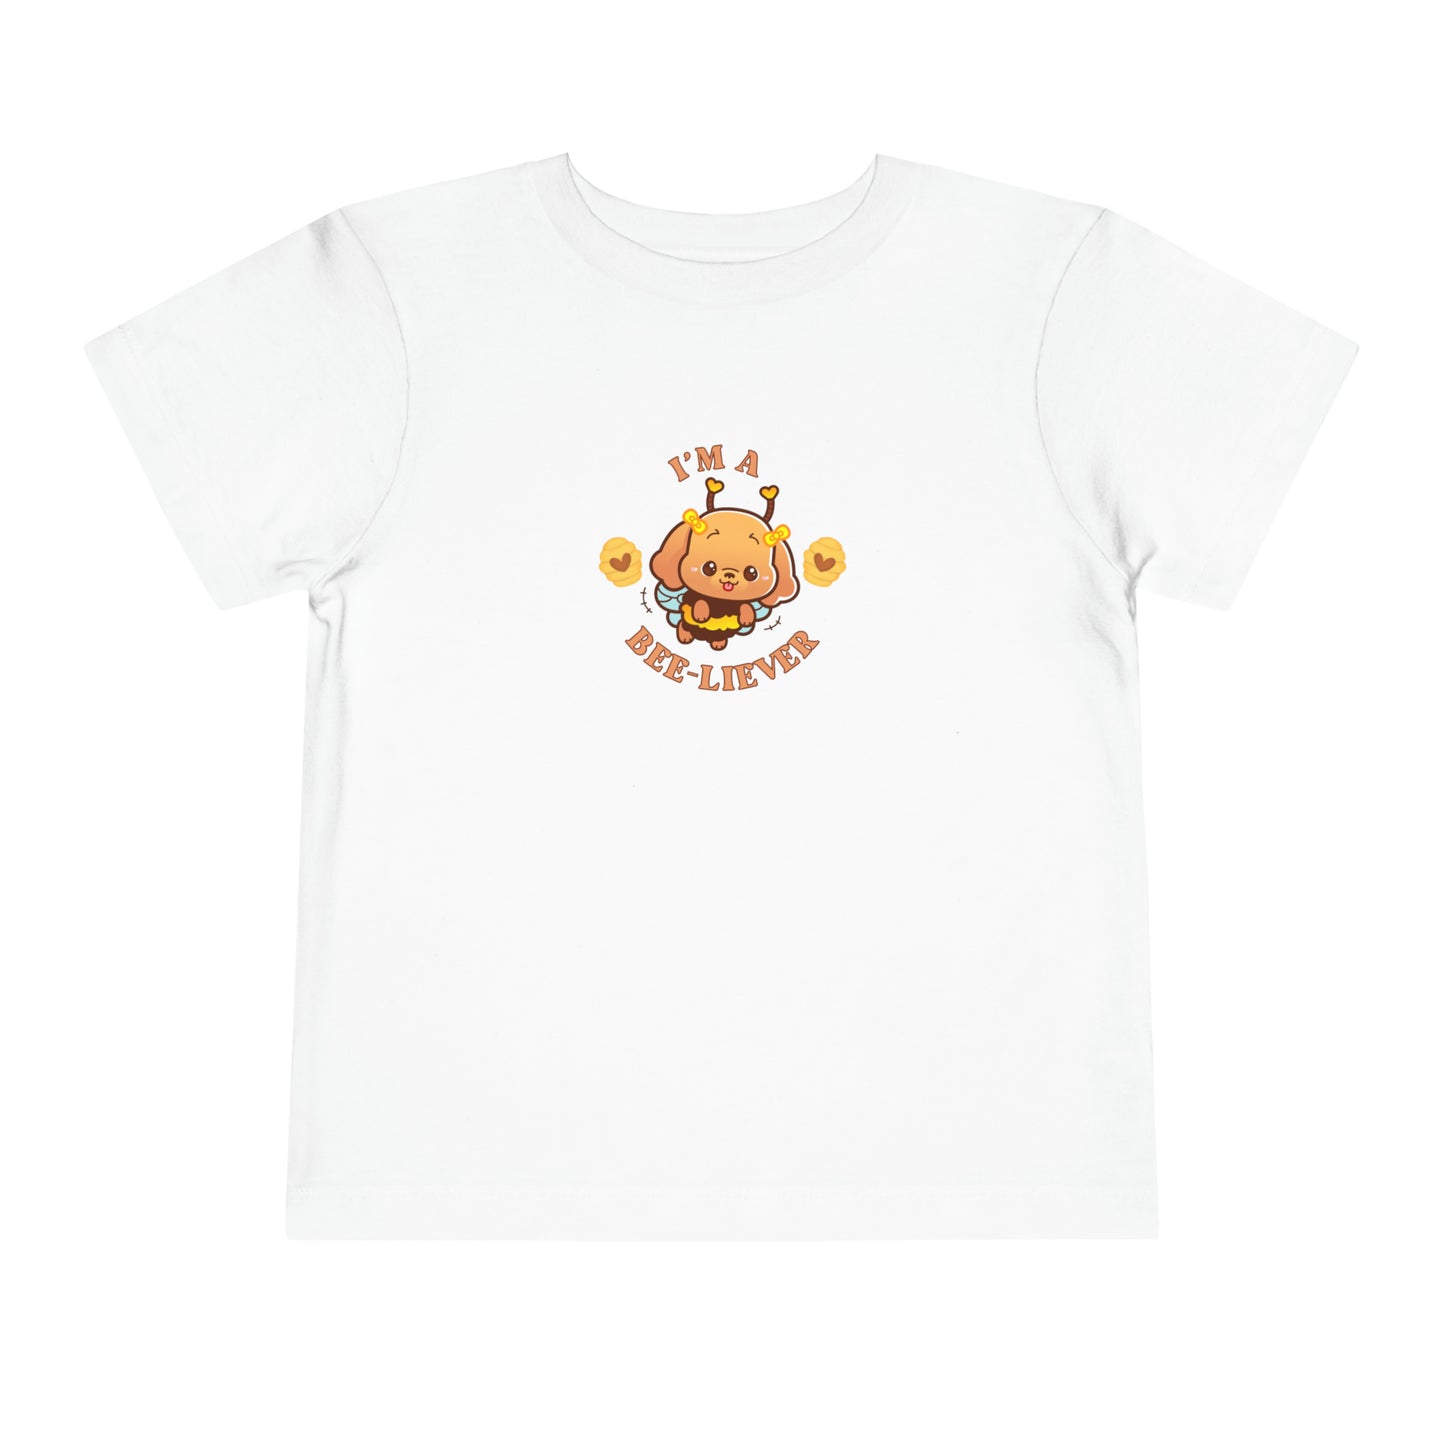 Bee-liever Toddler T-Shirt, Friendship Tee, Kids Faith Apparel, Christian Kids Tee